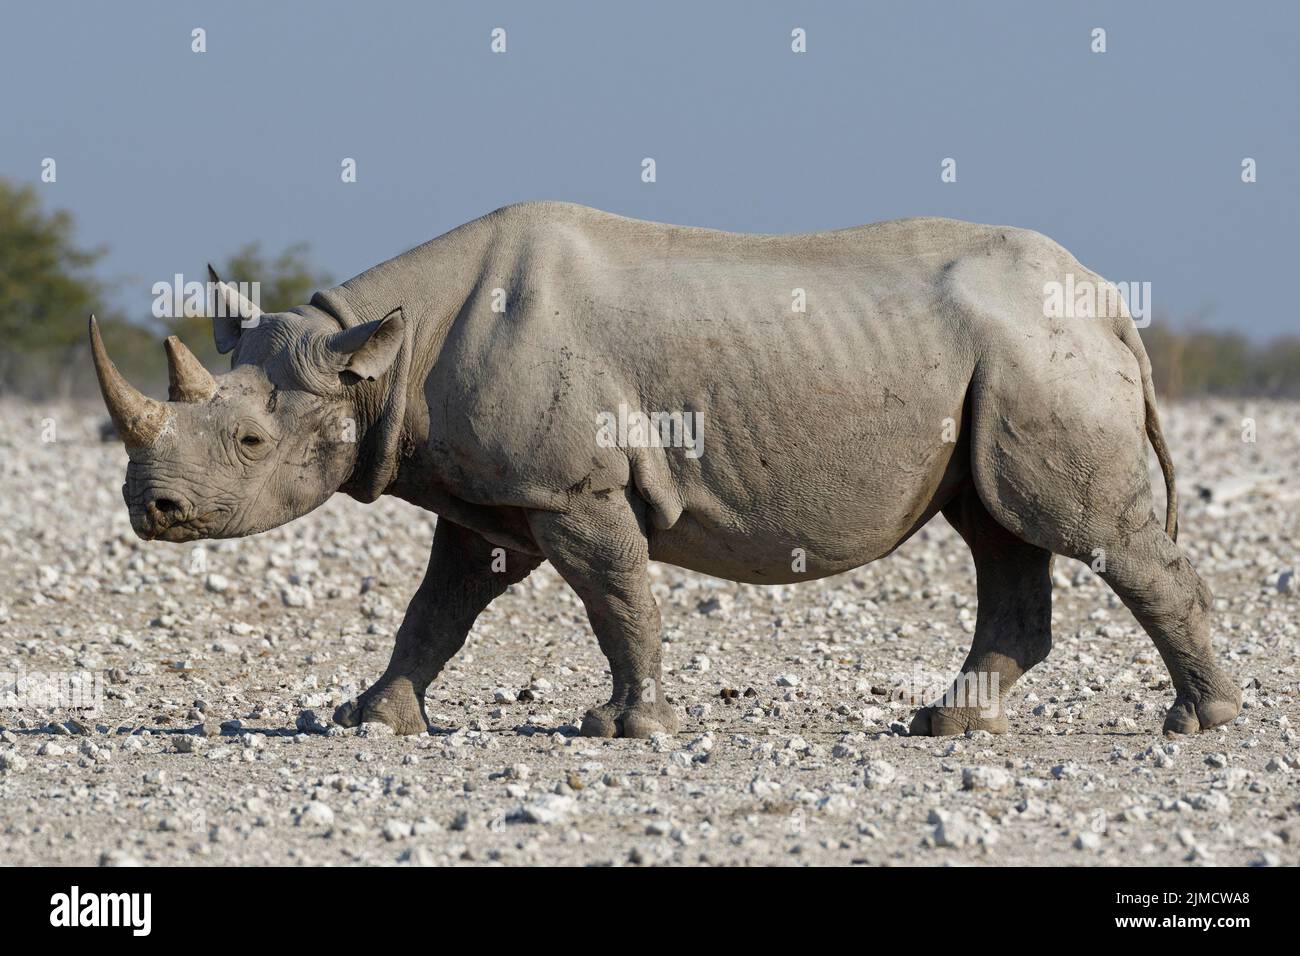 Black rhinoceros (Diceros bicornis), adult walking on arid ground, Etosha National Park, Namibia, Africa Stock Photo